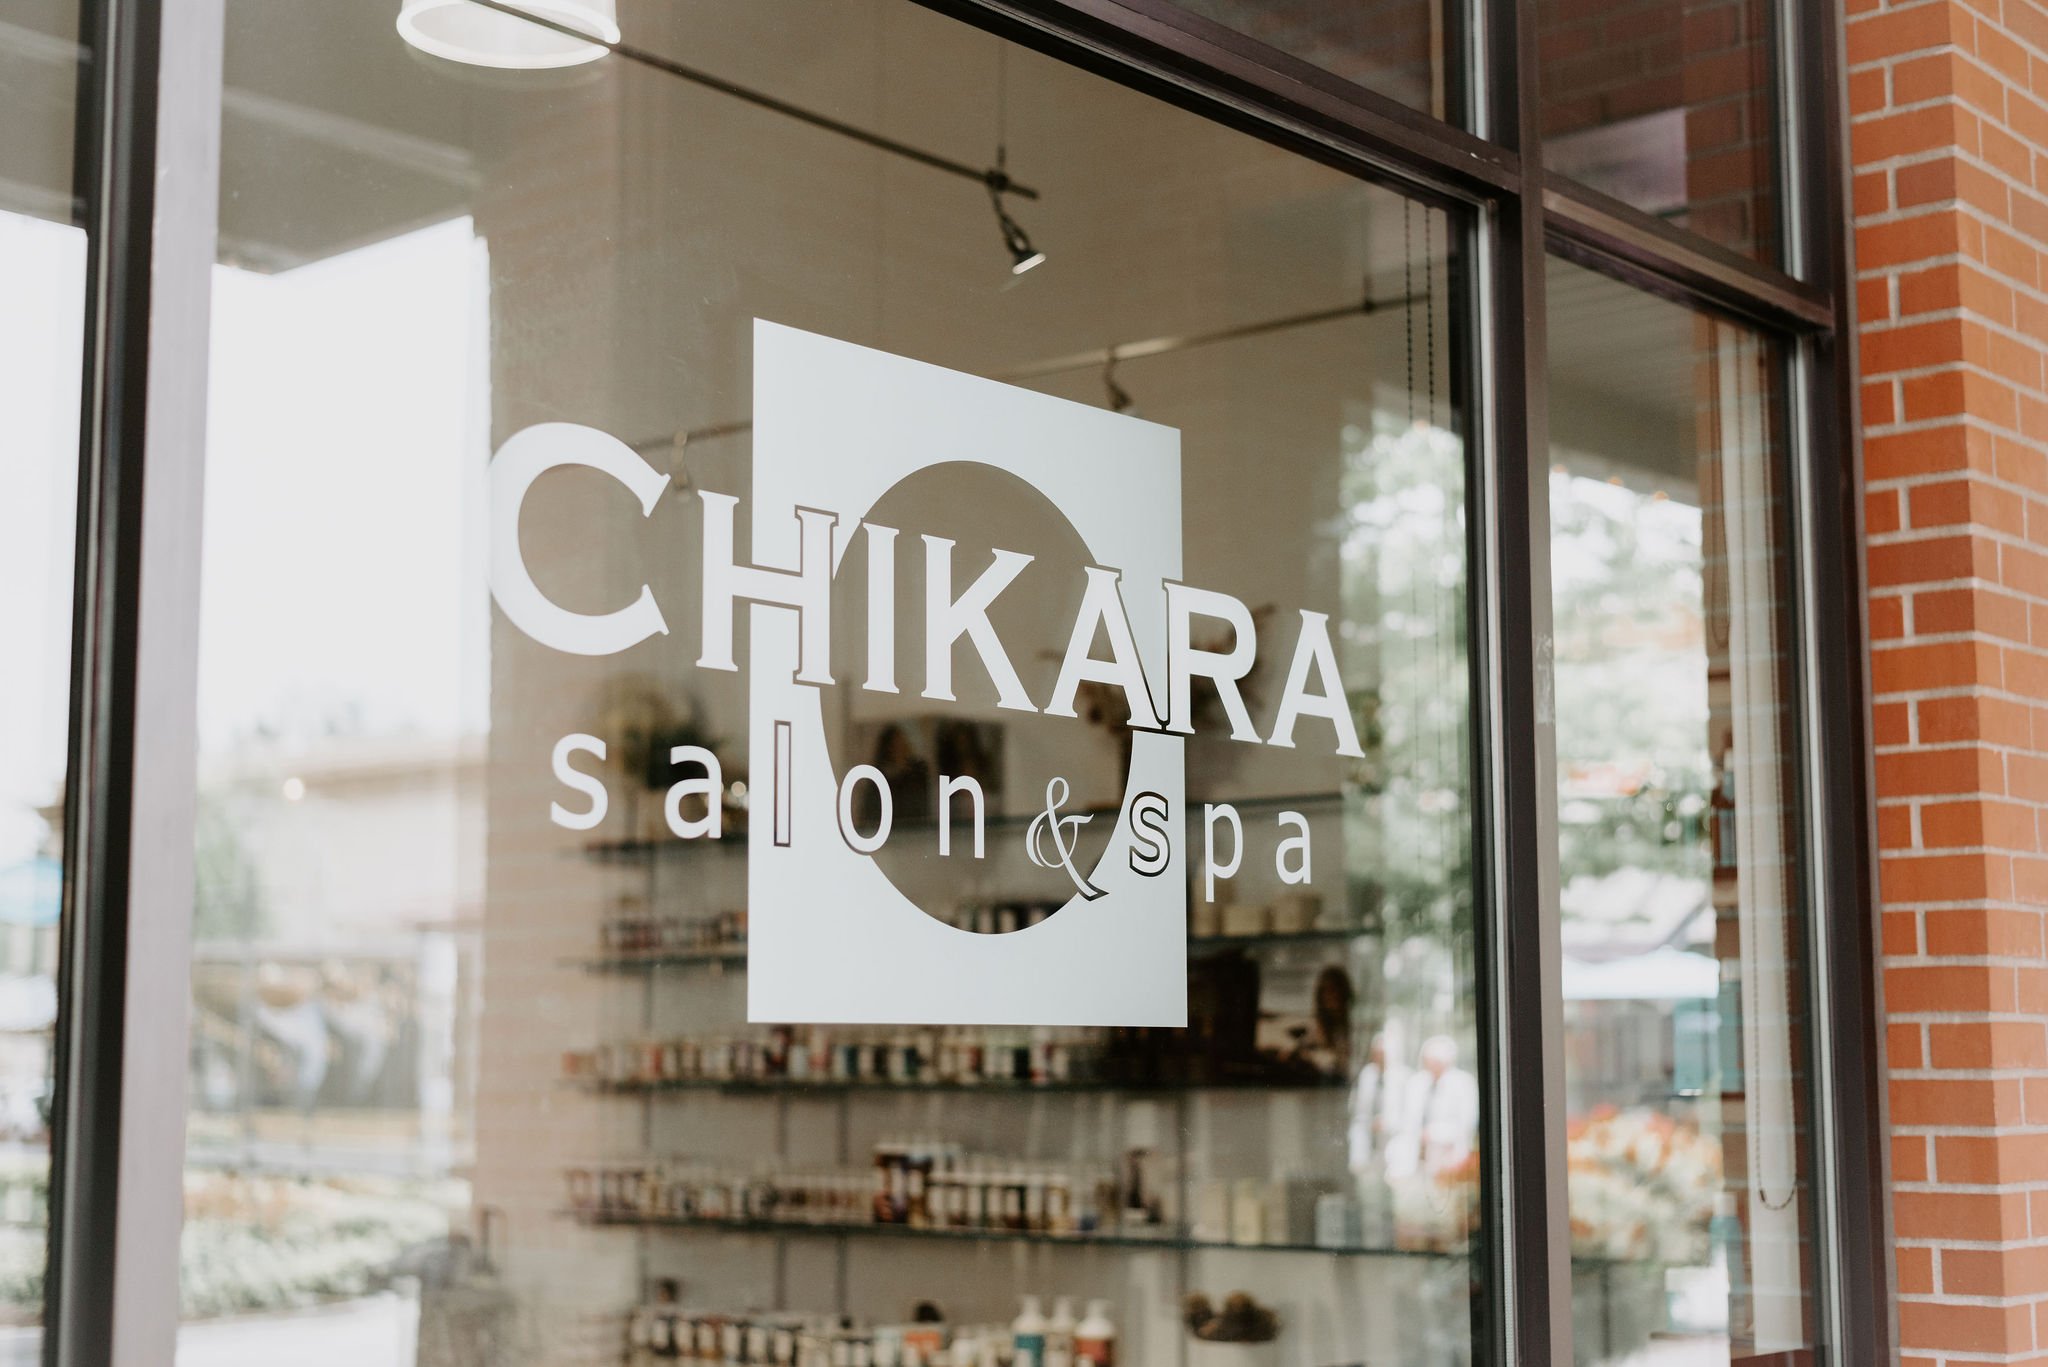 CHIKARA salon & spa - Eugene